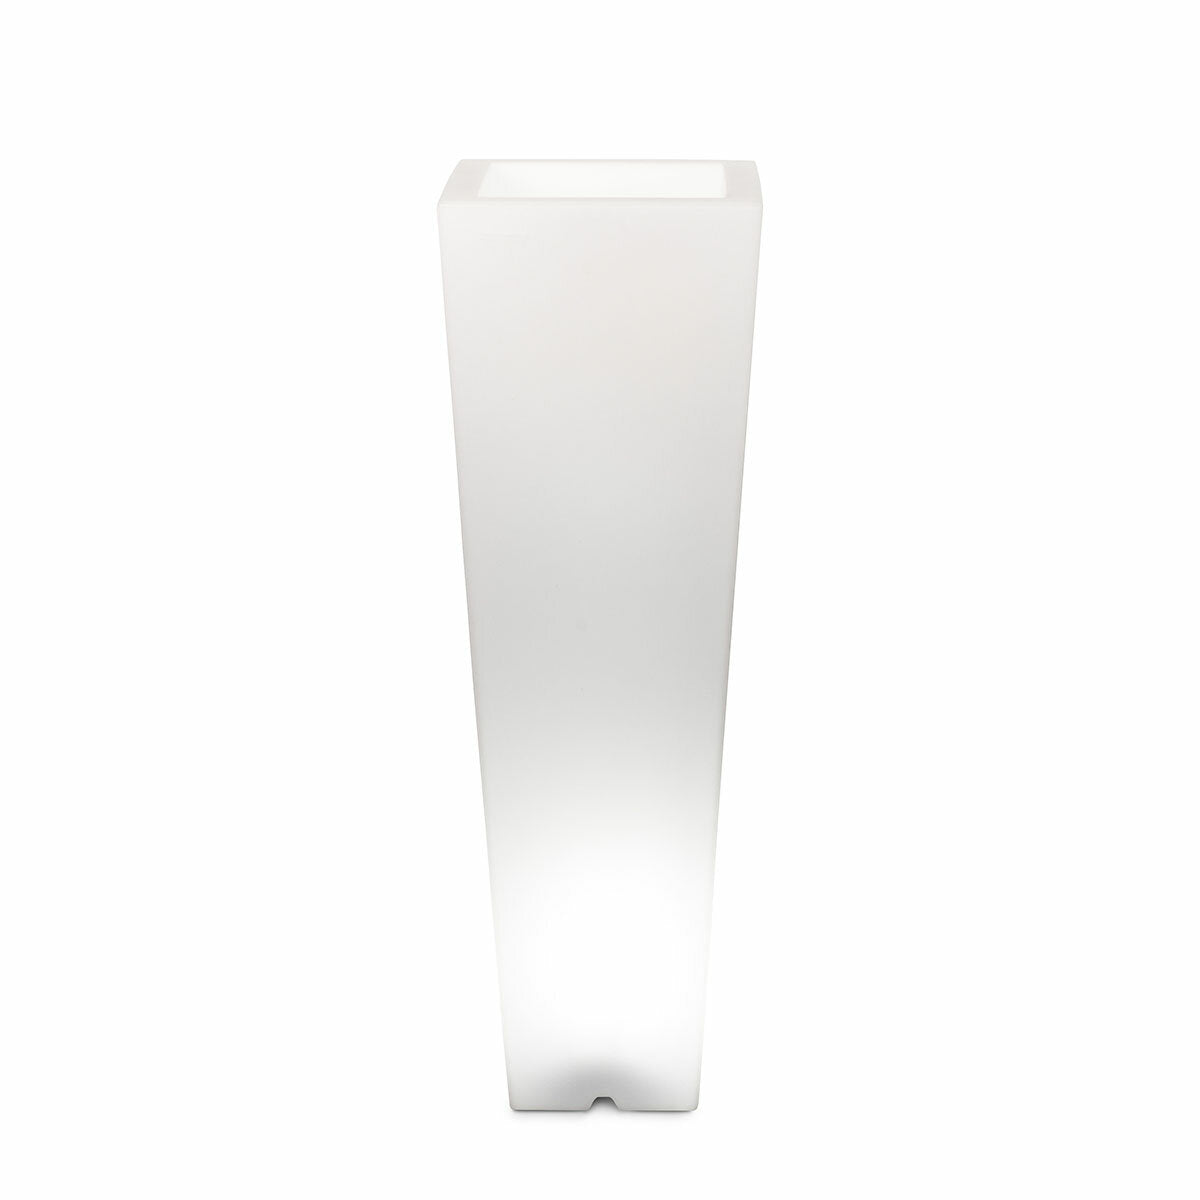 Arkema Quadro 86 SL outdoor square lighting vase